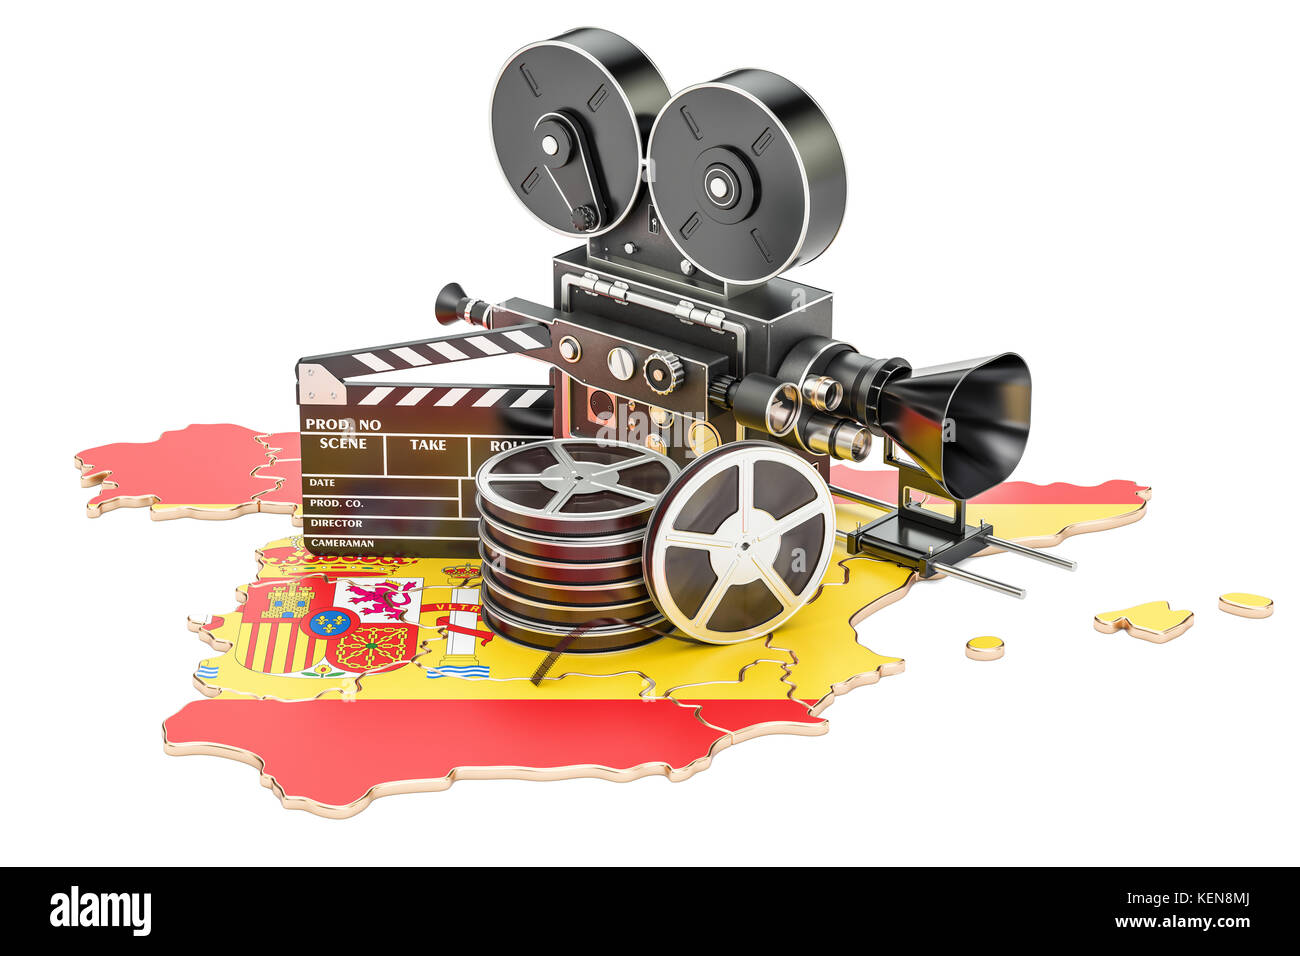 Spanisch Kinematographie, Filmindustrie Konzept. 3D-Rendering auf weißem Hintergrund Stockfoto